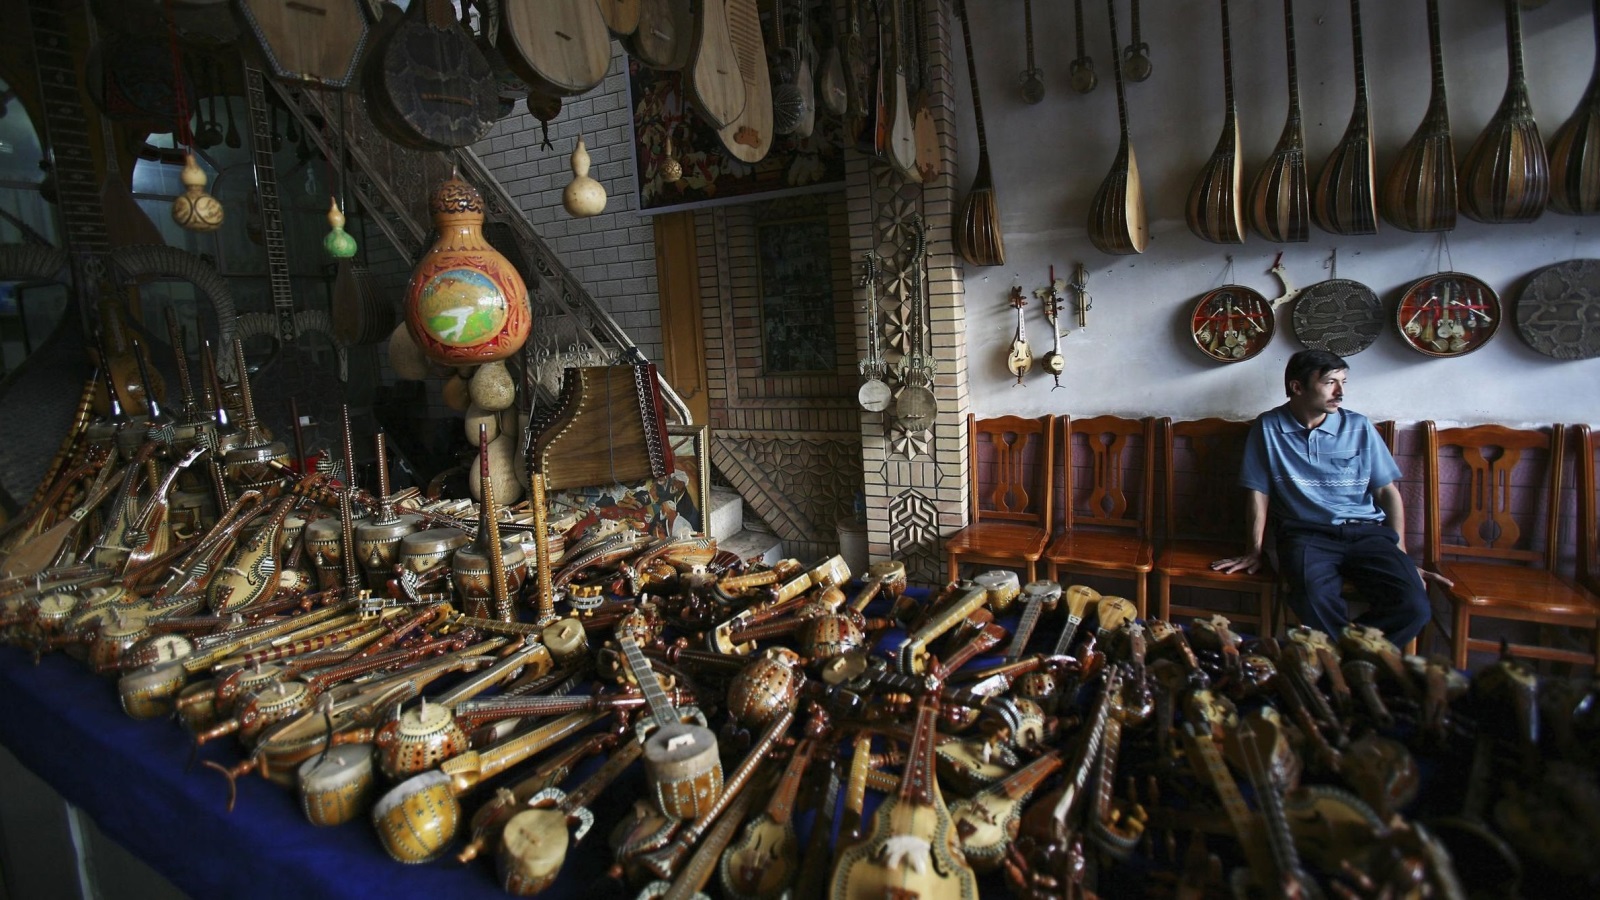 معرض لبيع أدوات عزف تقليدية لا تزال مستخدمة في المجتمع الإيغوري (غيتي)